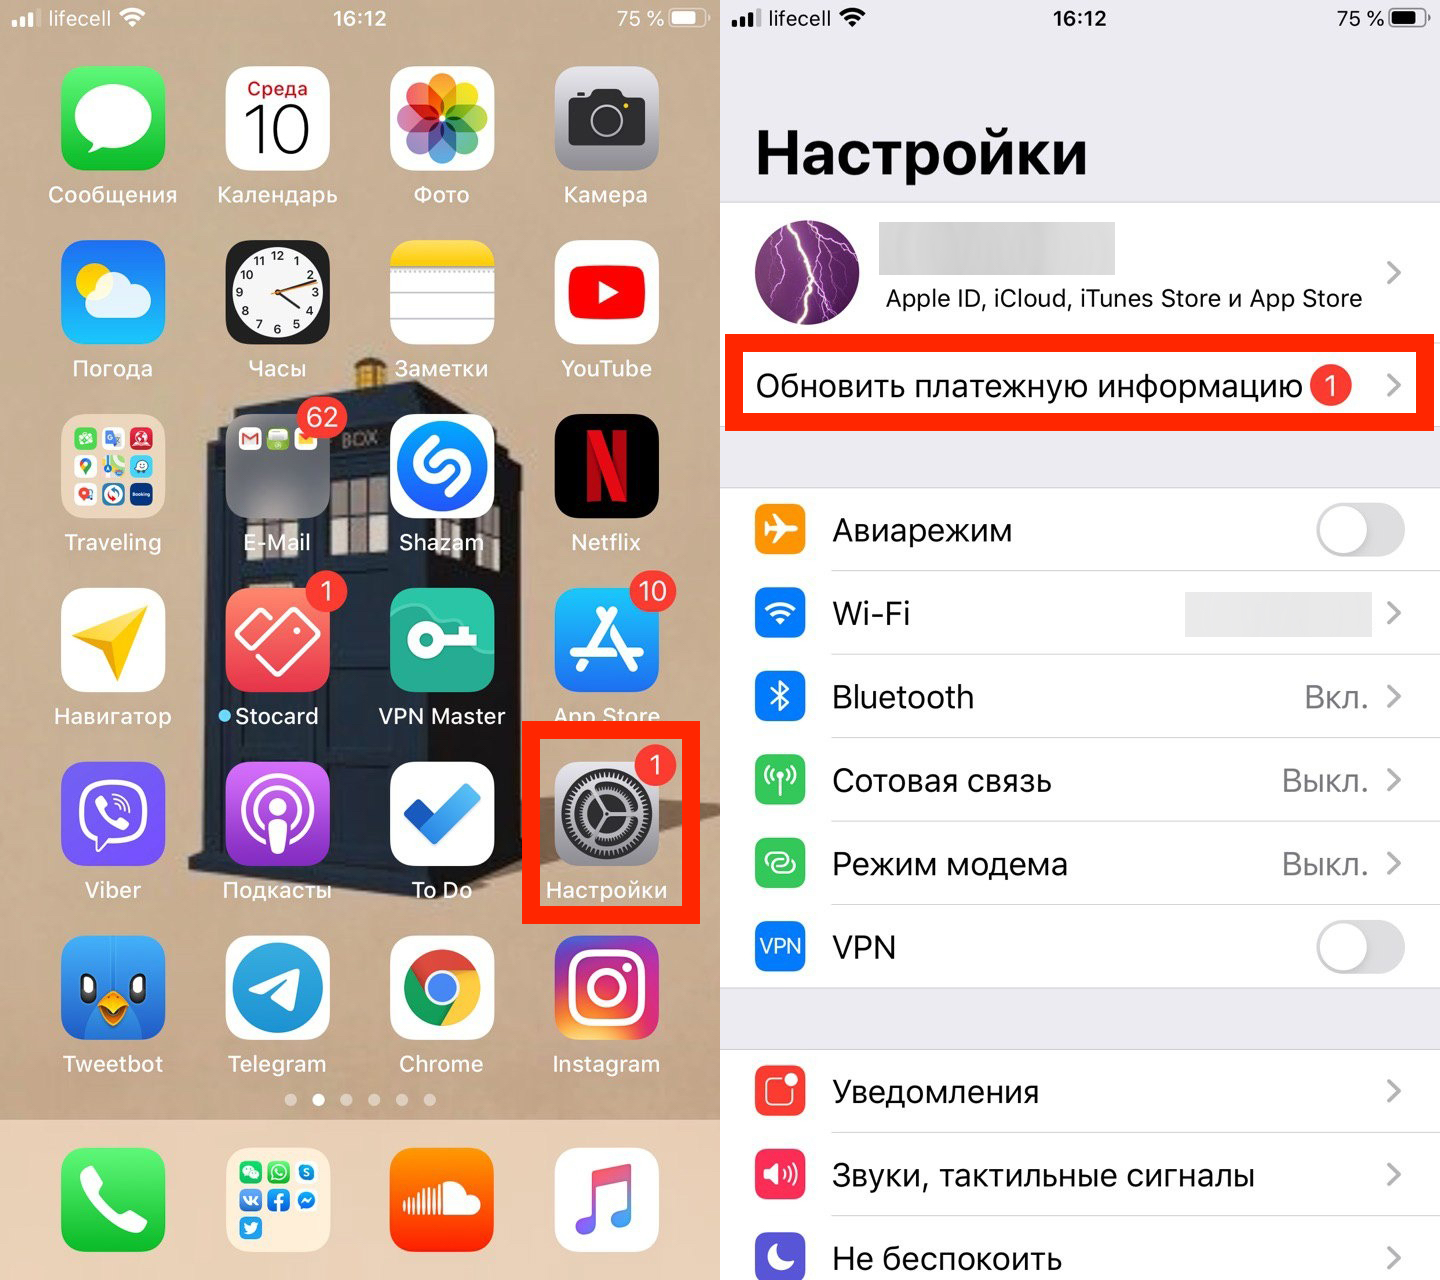 Установить телеграмм на айфон бесплатно на русском языке приложение для скачивания приложений айфон фото 50